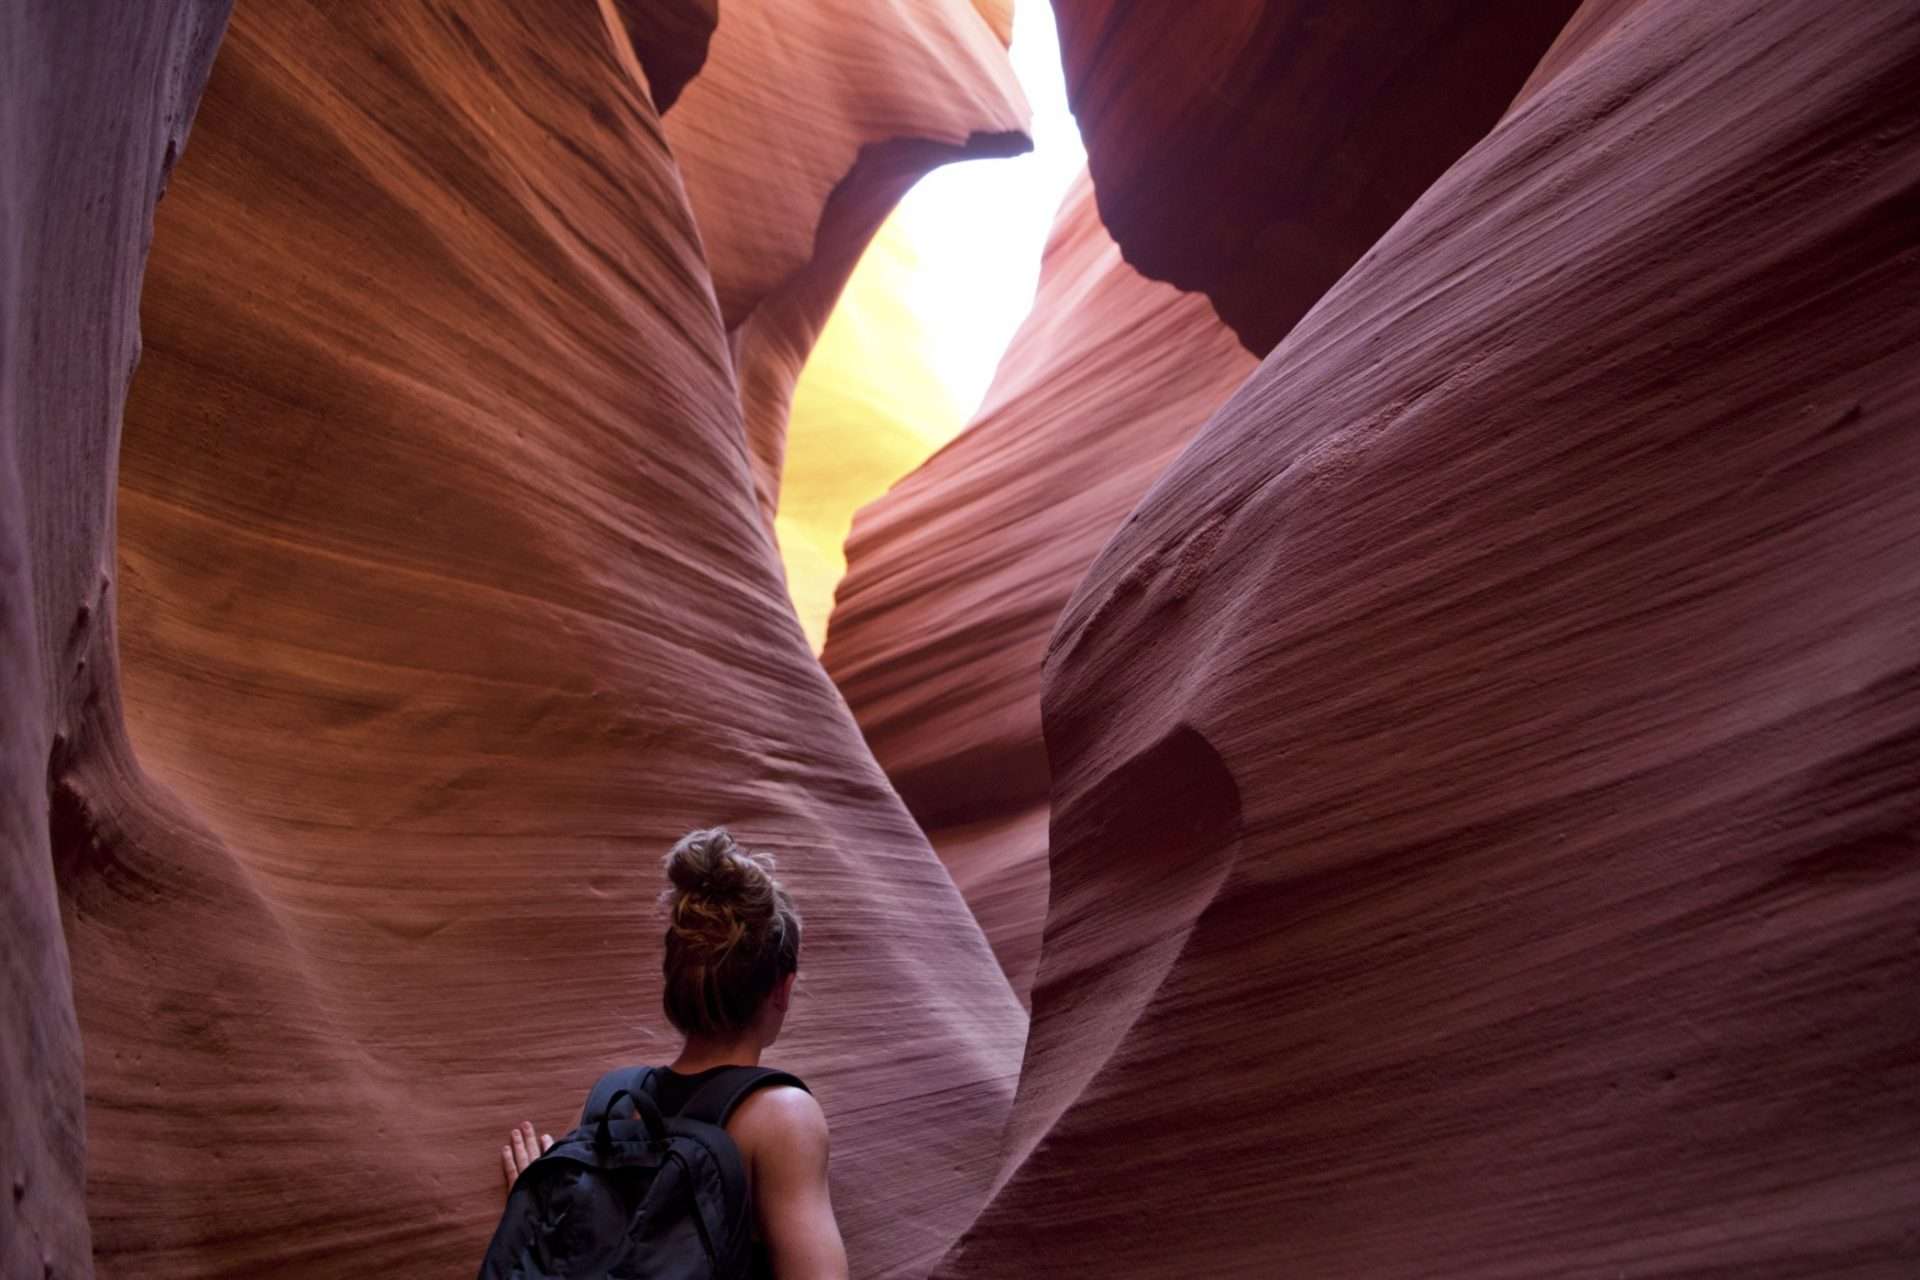 Woman hiking through a slot canyon.